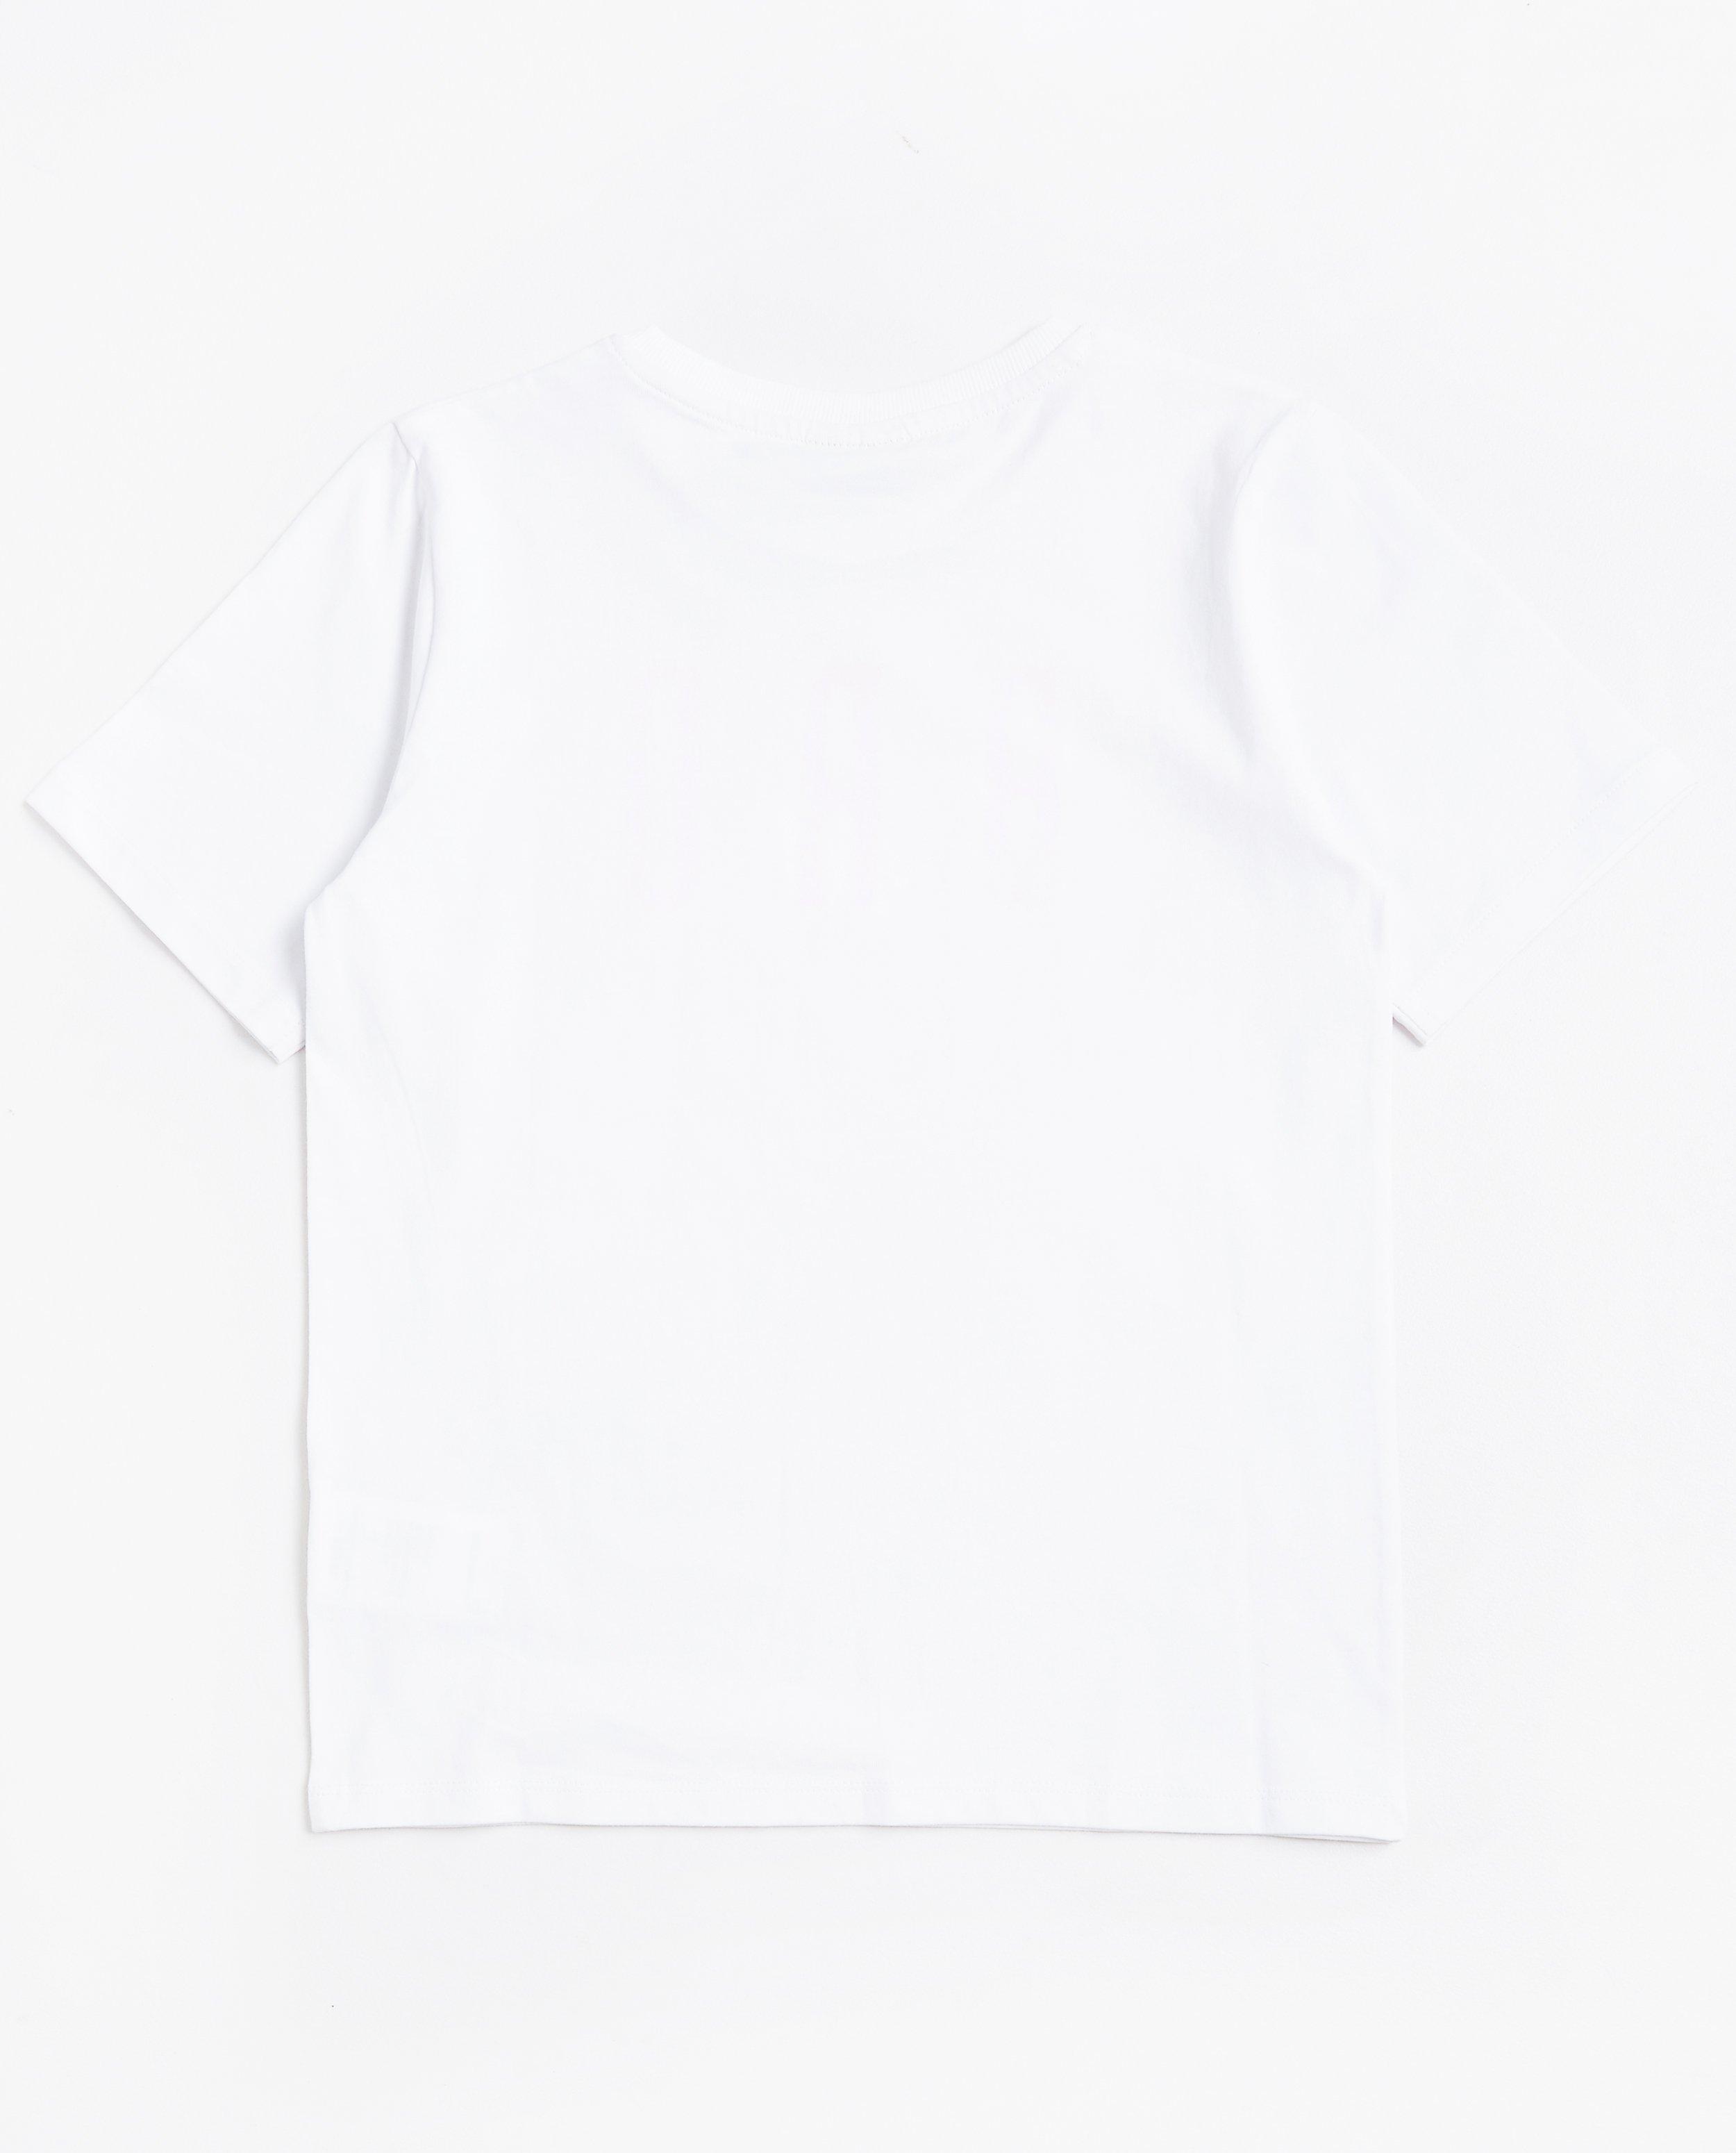 T-shirts - T-shirt blanc #familystoriesjbc